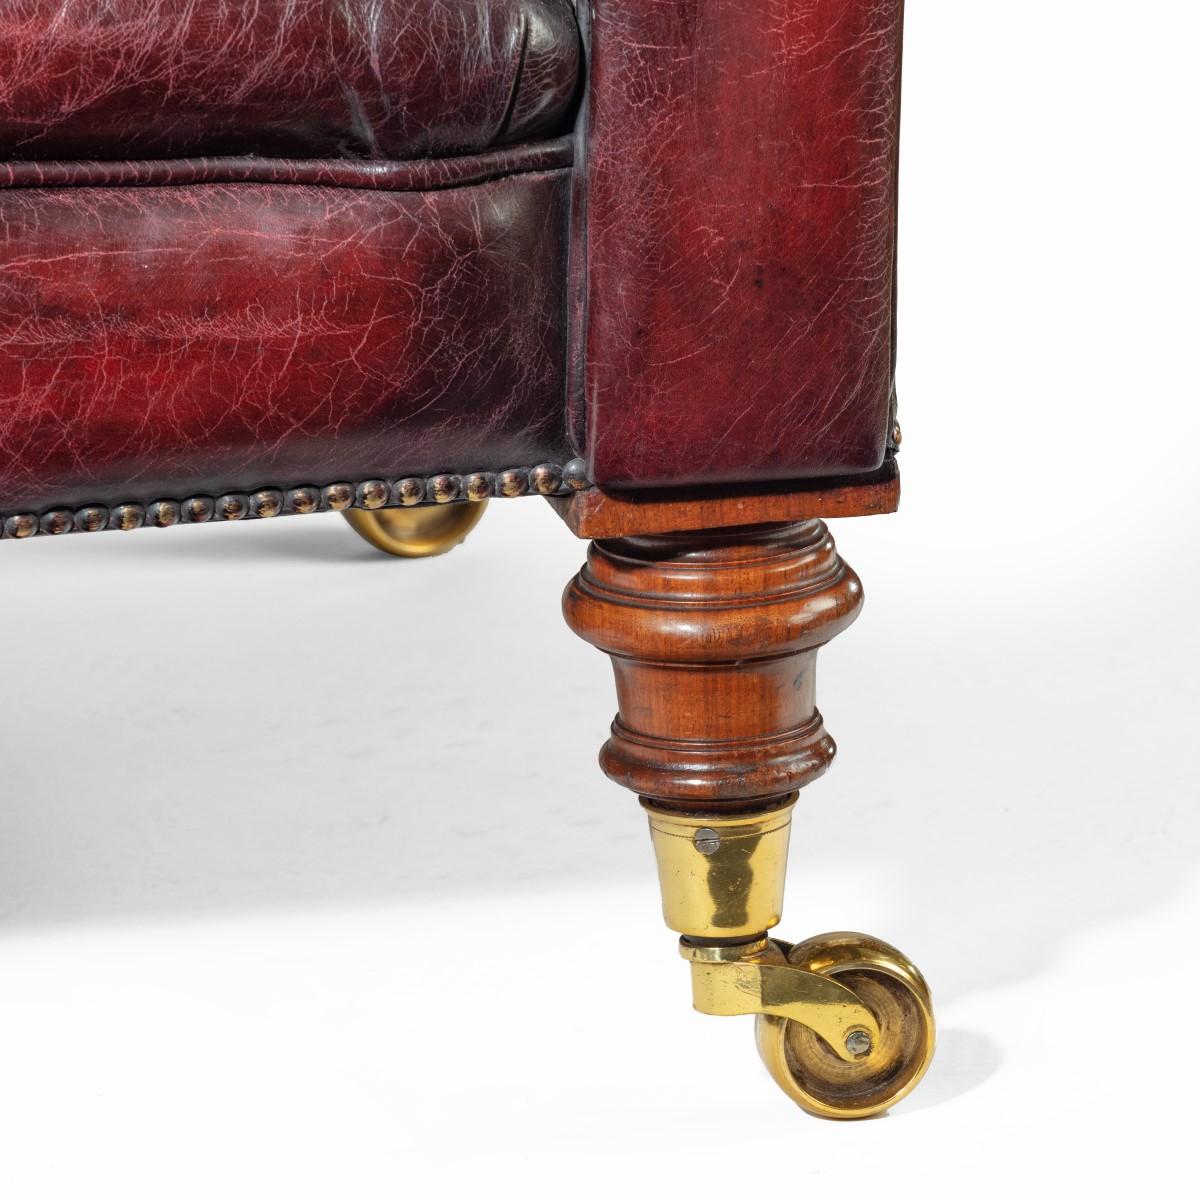 Canapé Chesterfield victorien profondément boutonné, avec un dossier droit et des accoudoirs en volute, reposant sur quatre pieds en noyer tournés avec des roulettes en laiton, retapissé en cuir bordeaux vieilli. Anglais, vers 1850.

 